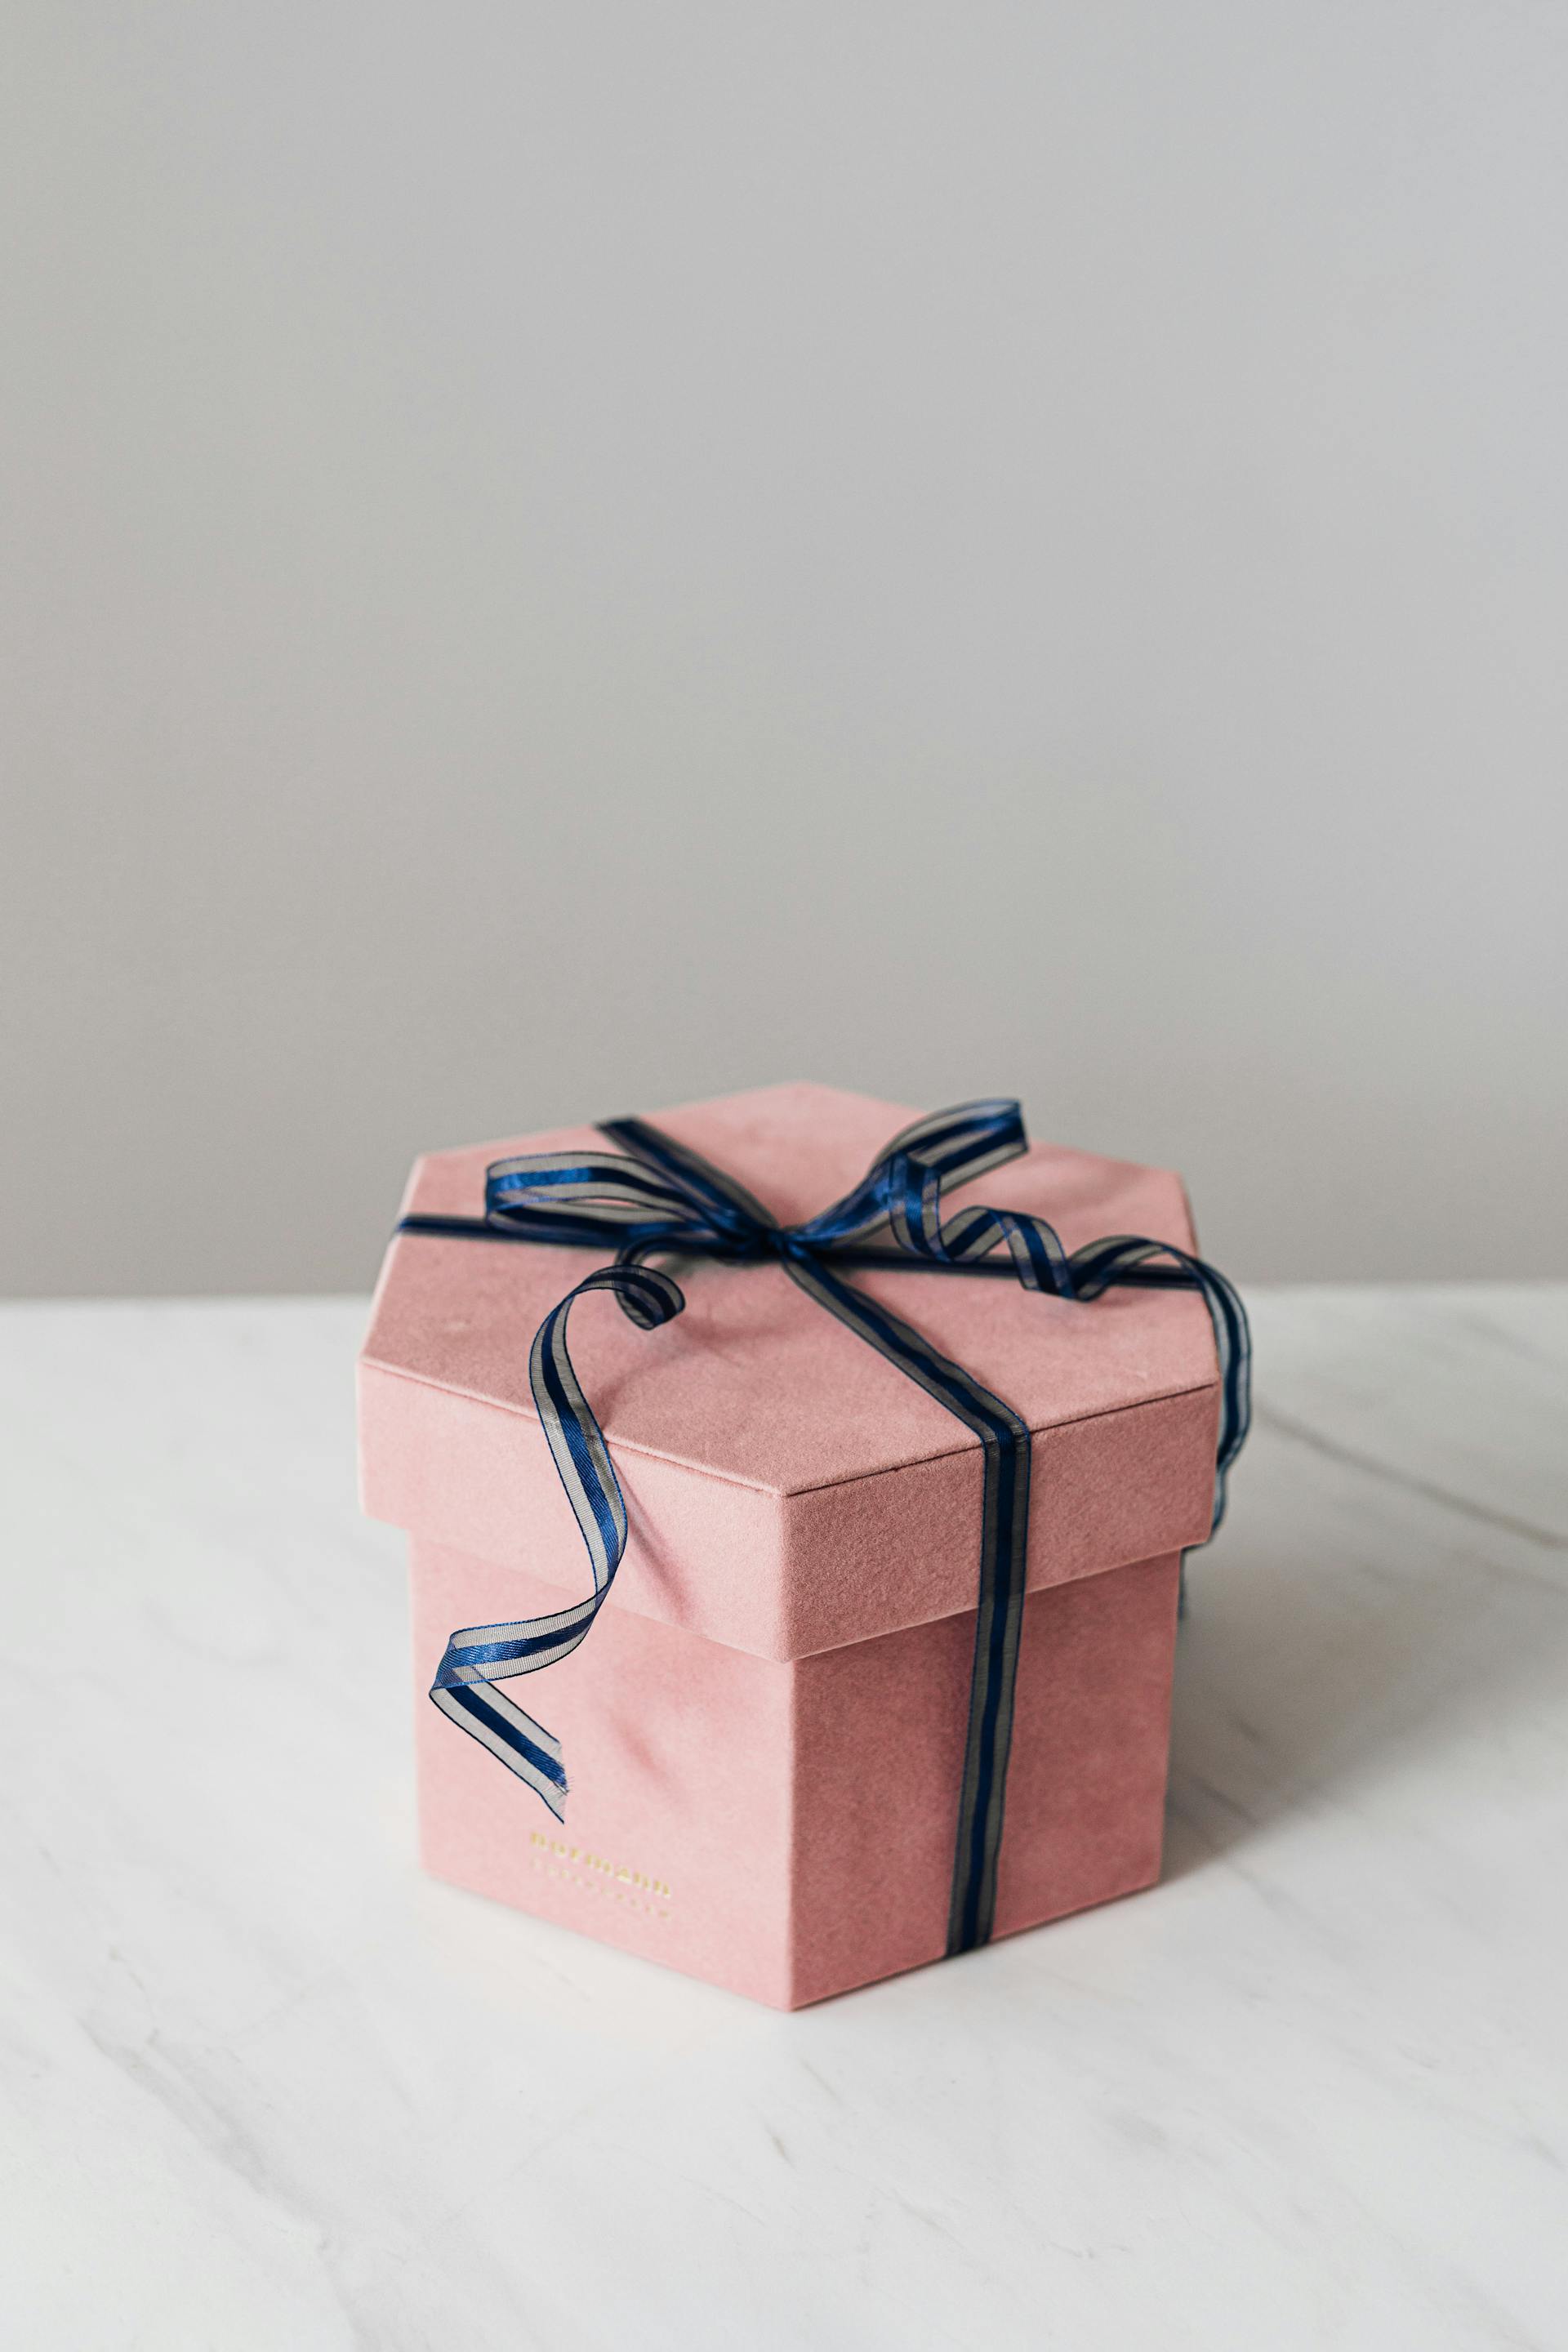 Una caja de regalo | Foto: Pexels